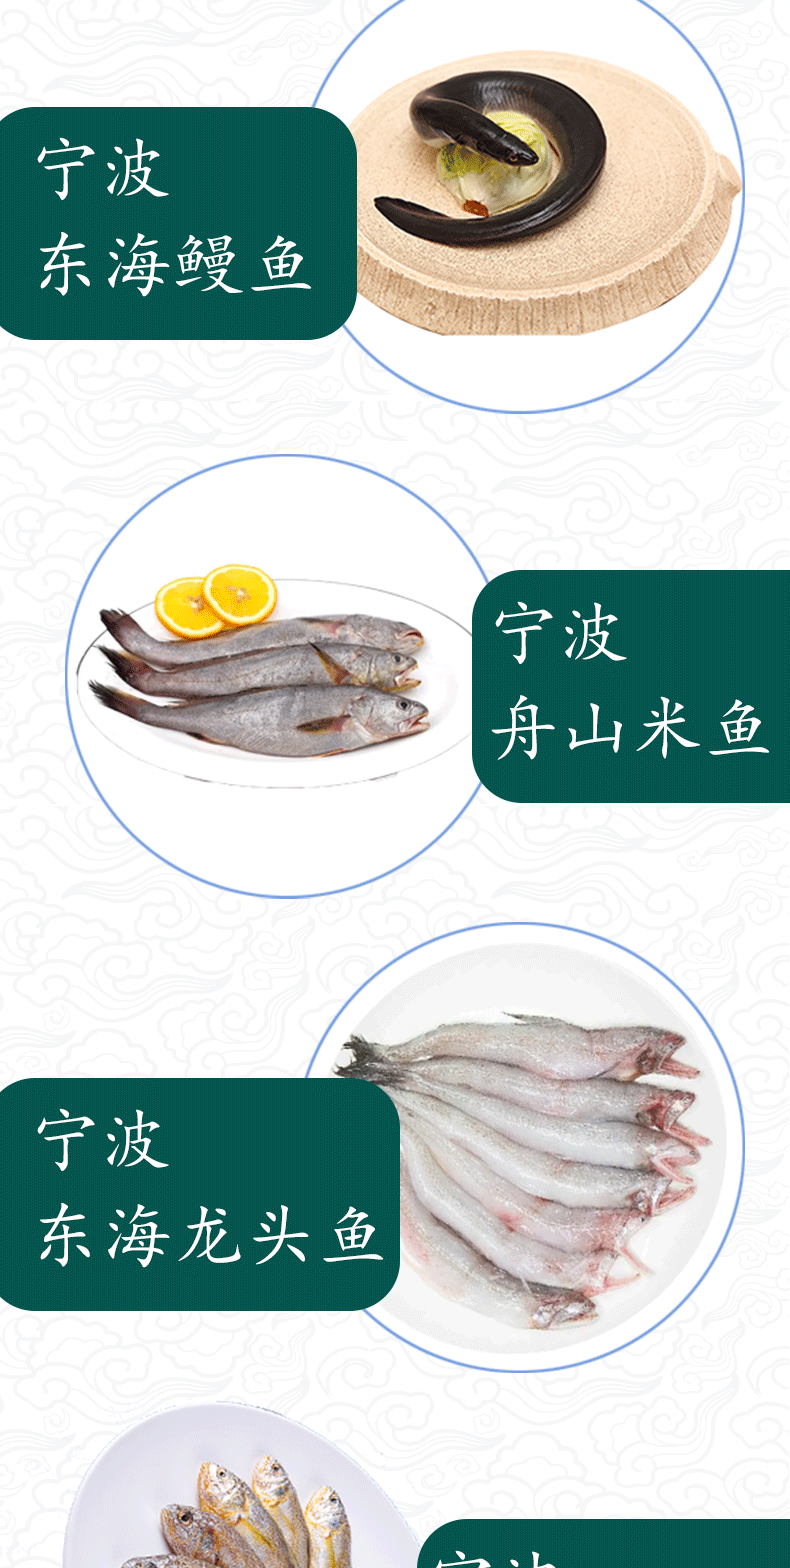 搜鱼 【现货】搜鱼国产海鲜礼盒399型鲜活冷冻海产大套餐节日送礼礼